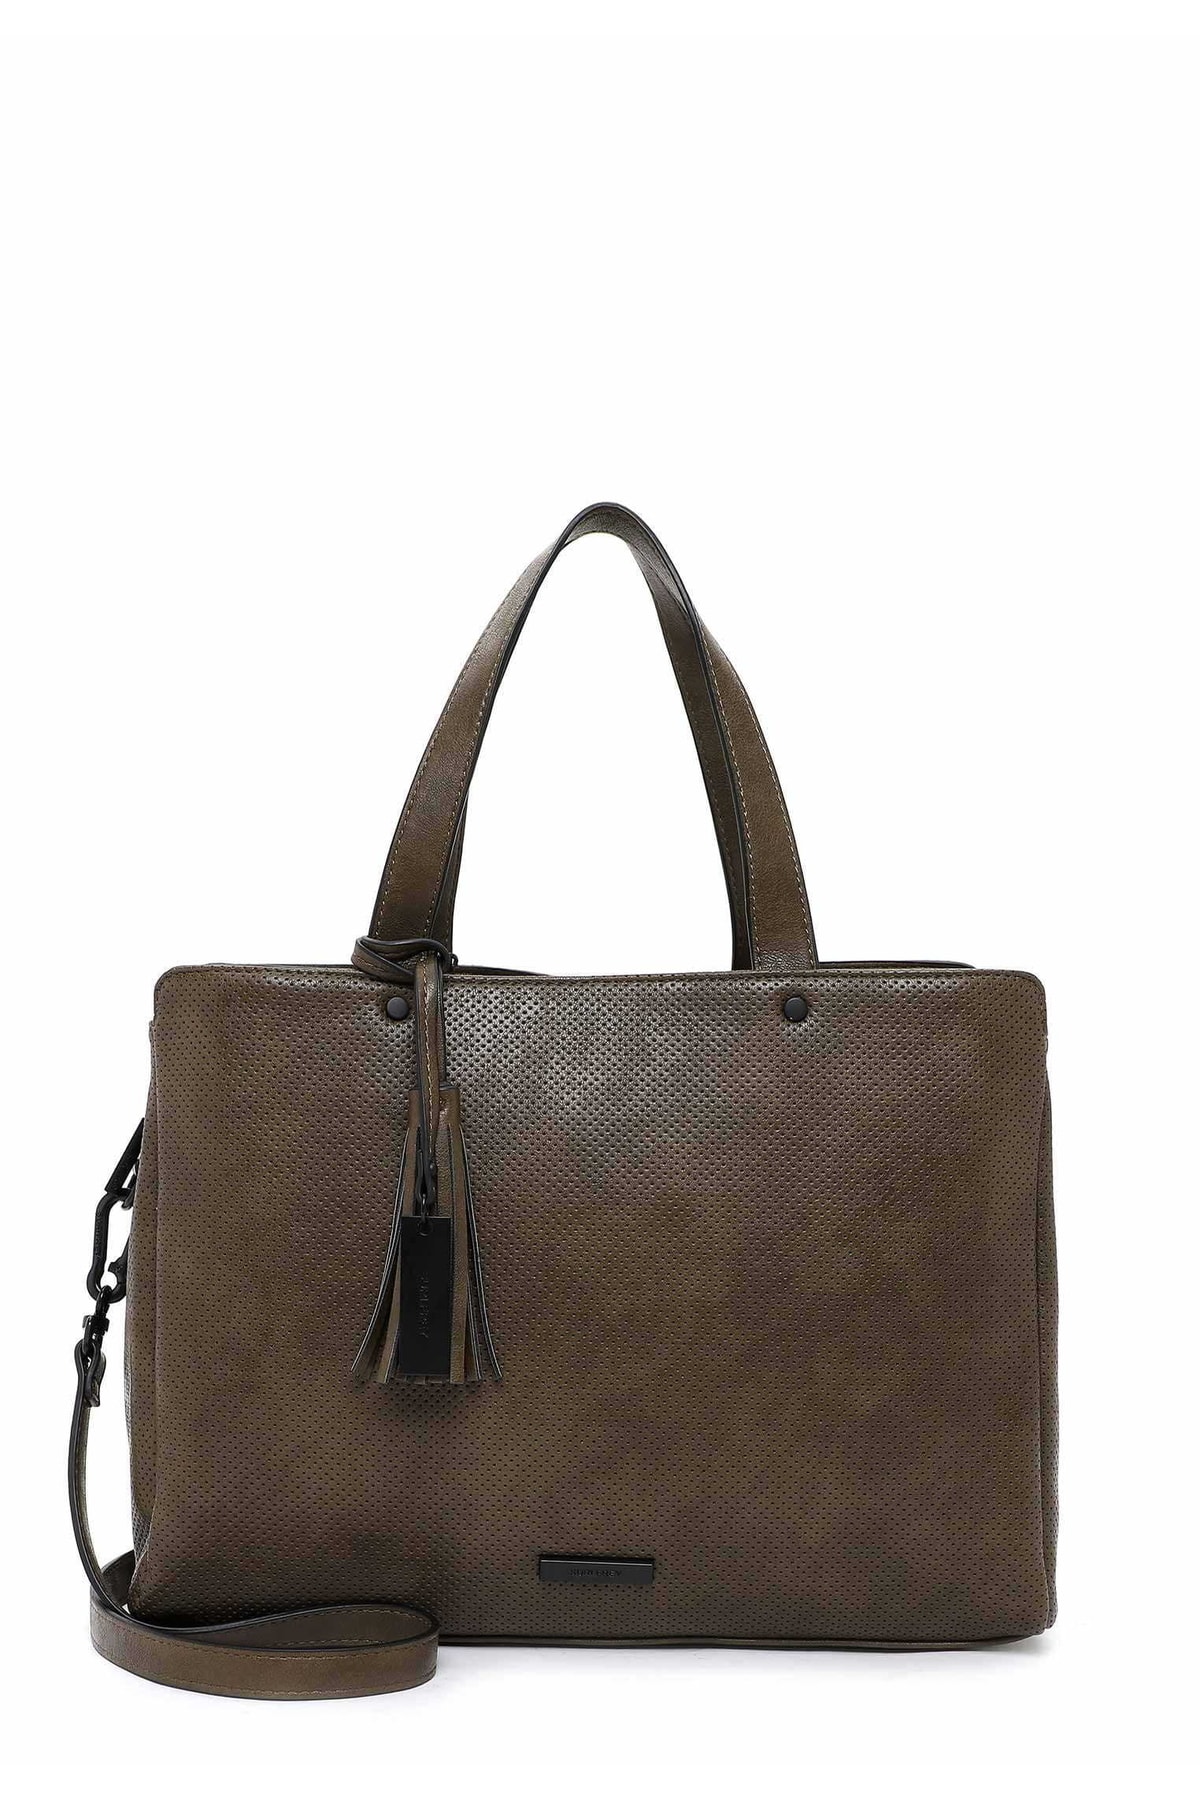 SURI FREY Handtasche Braun Unifarben Fast ausverkauft